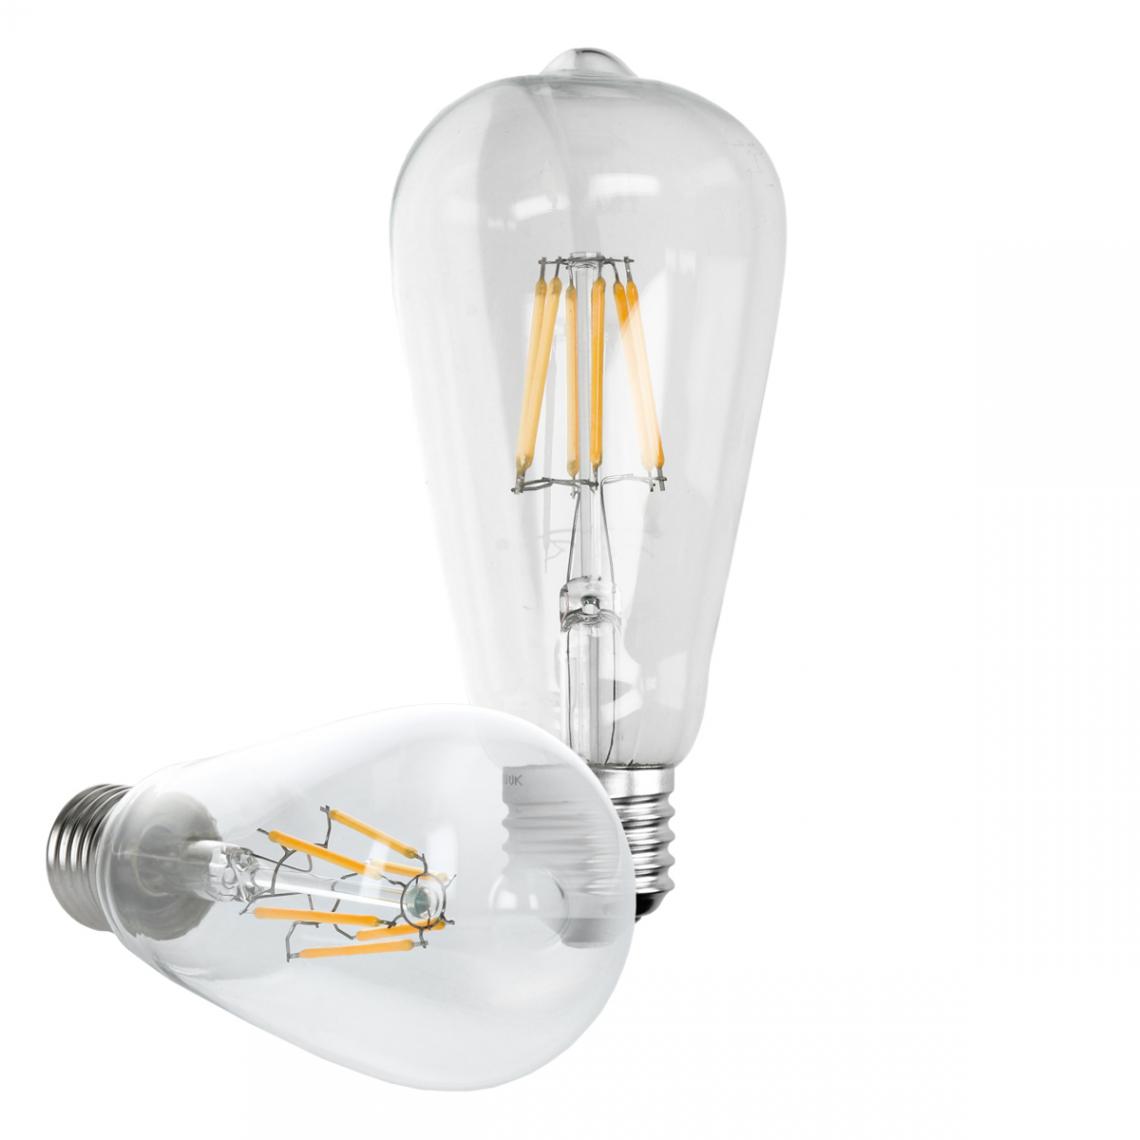 Ecd Germany - ECD Germany 5 x LED Filament de l'ampoule E27 classique Edison 6W 612 lumens angle de faisceau 120 ° AC 220-240 reste caché et remplace environ 40W lampe incandescente blanc chaud - Ampoules LED